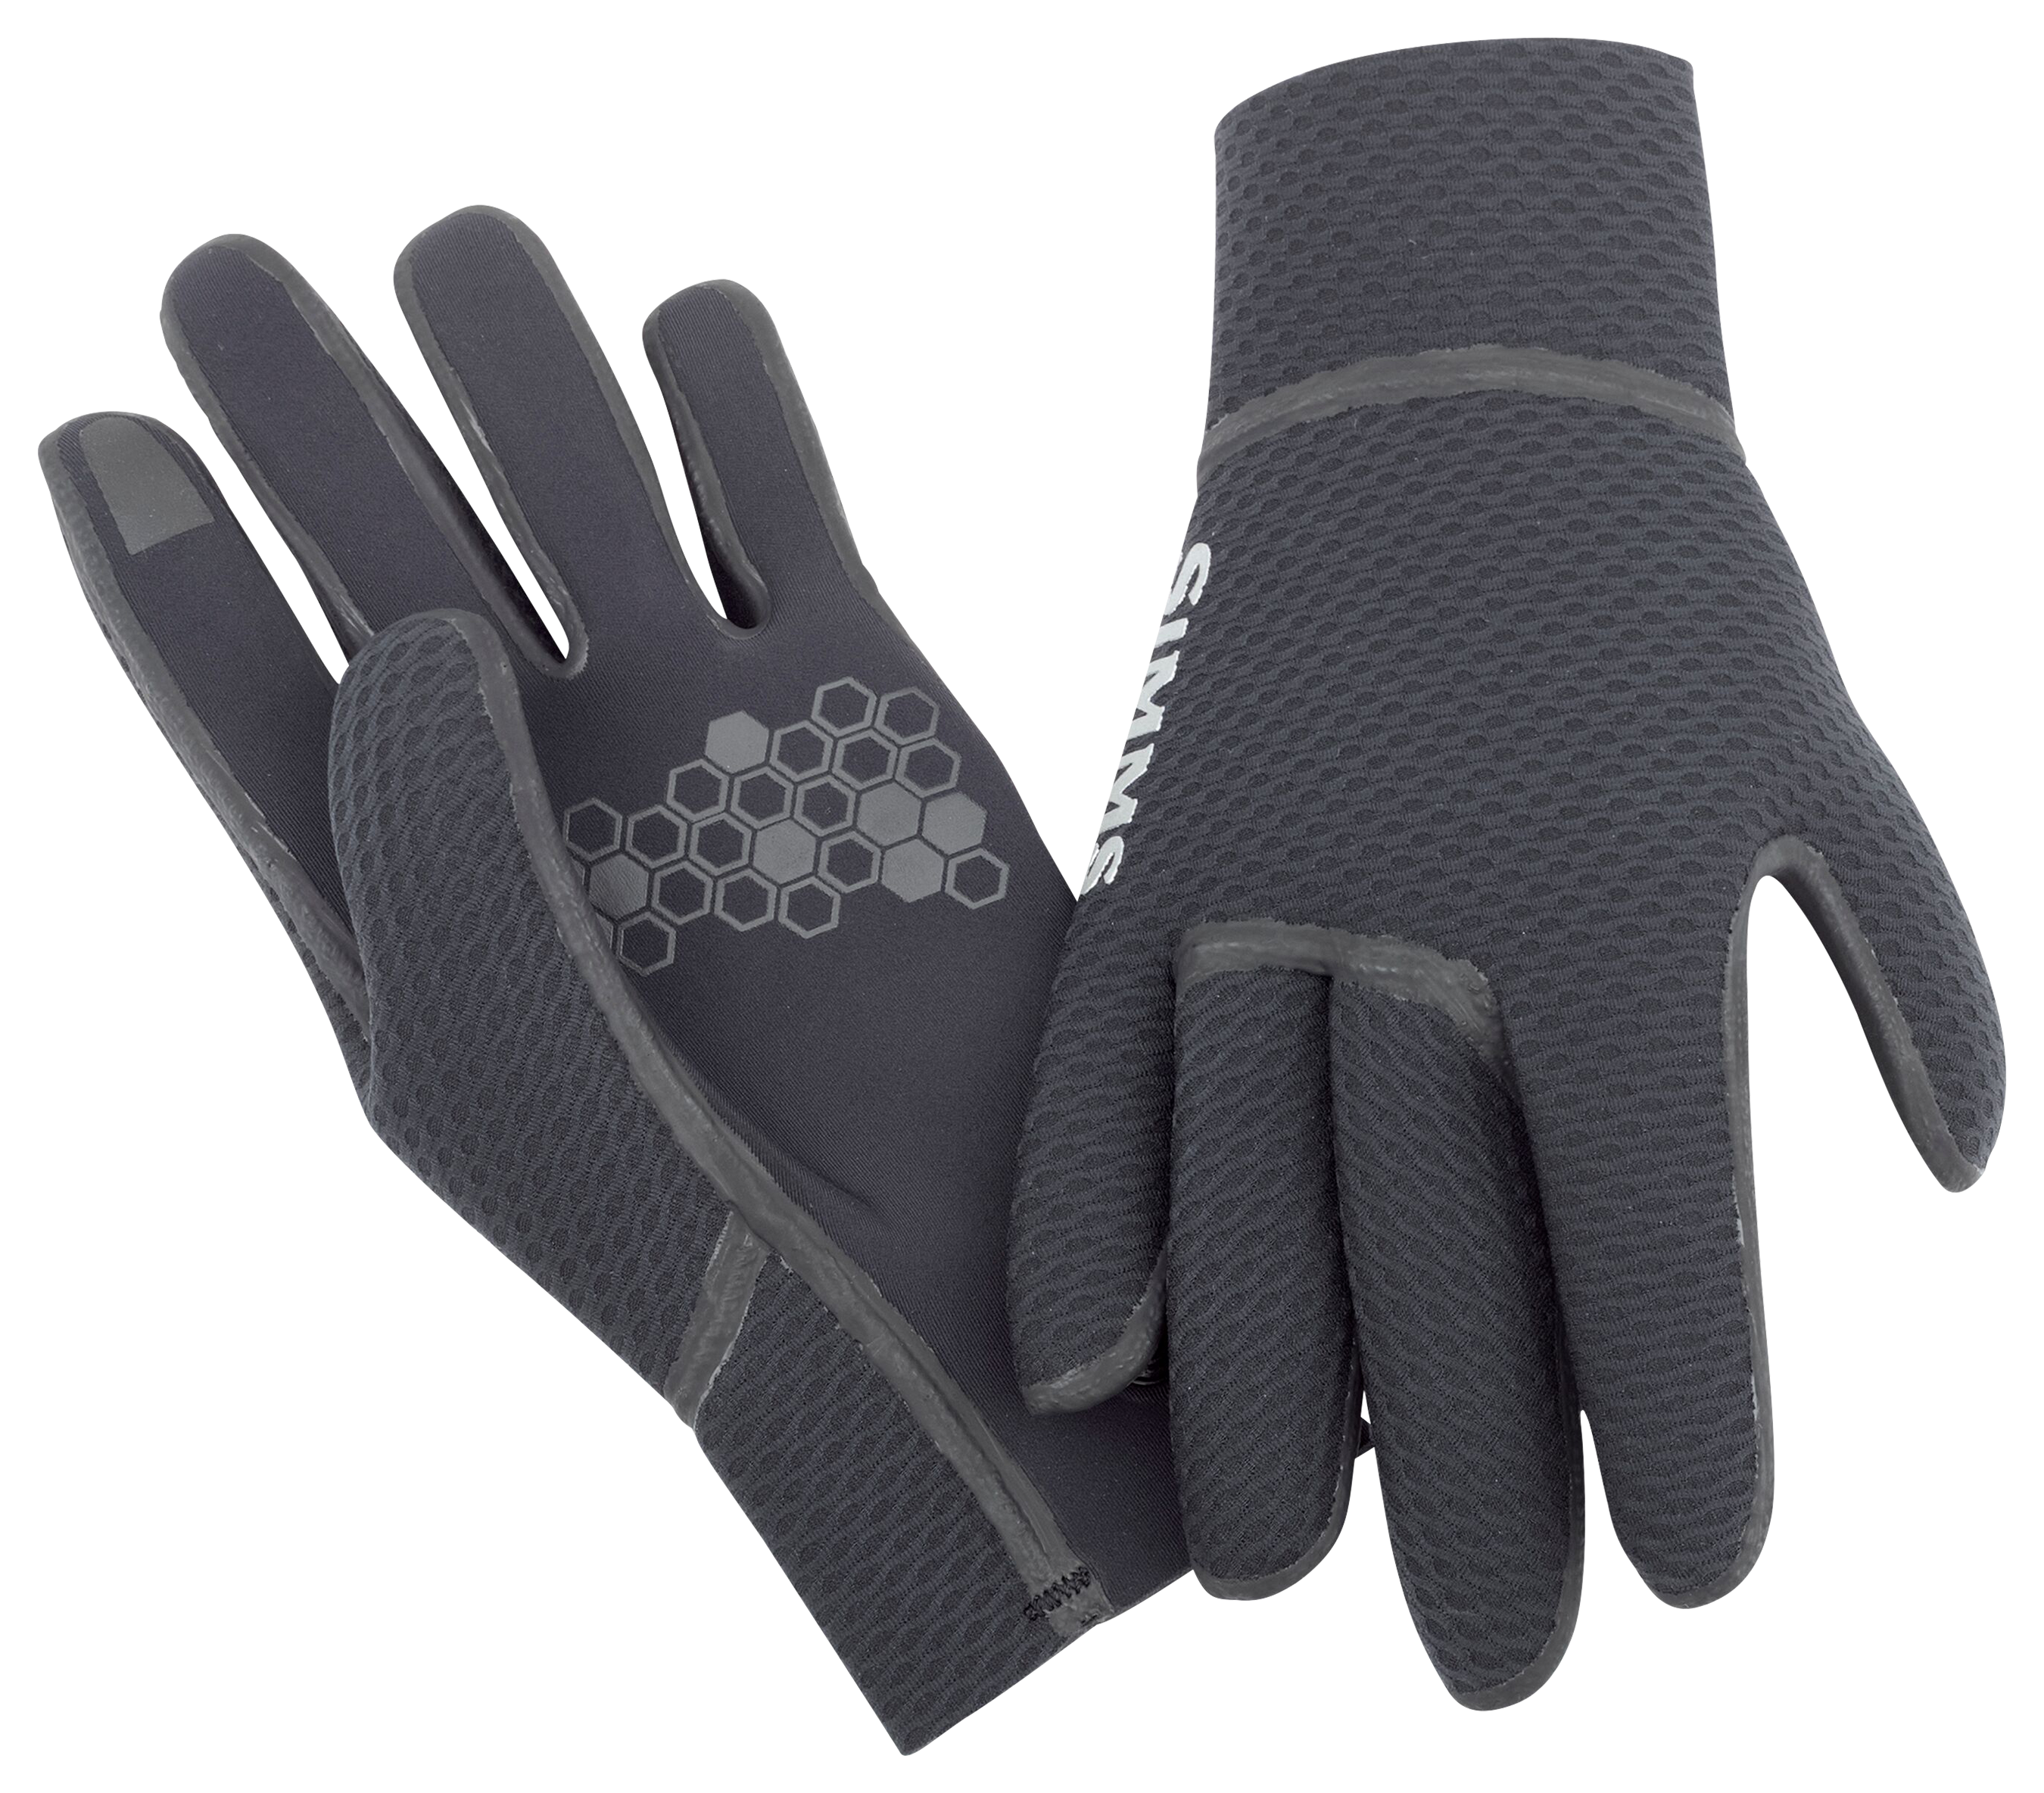 Simms Kispiox Gloves for Men